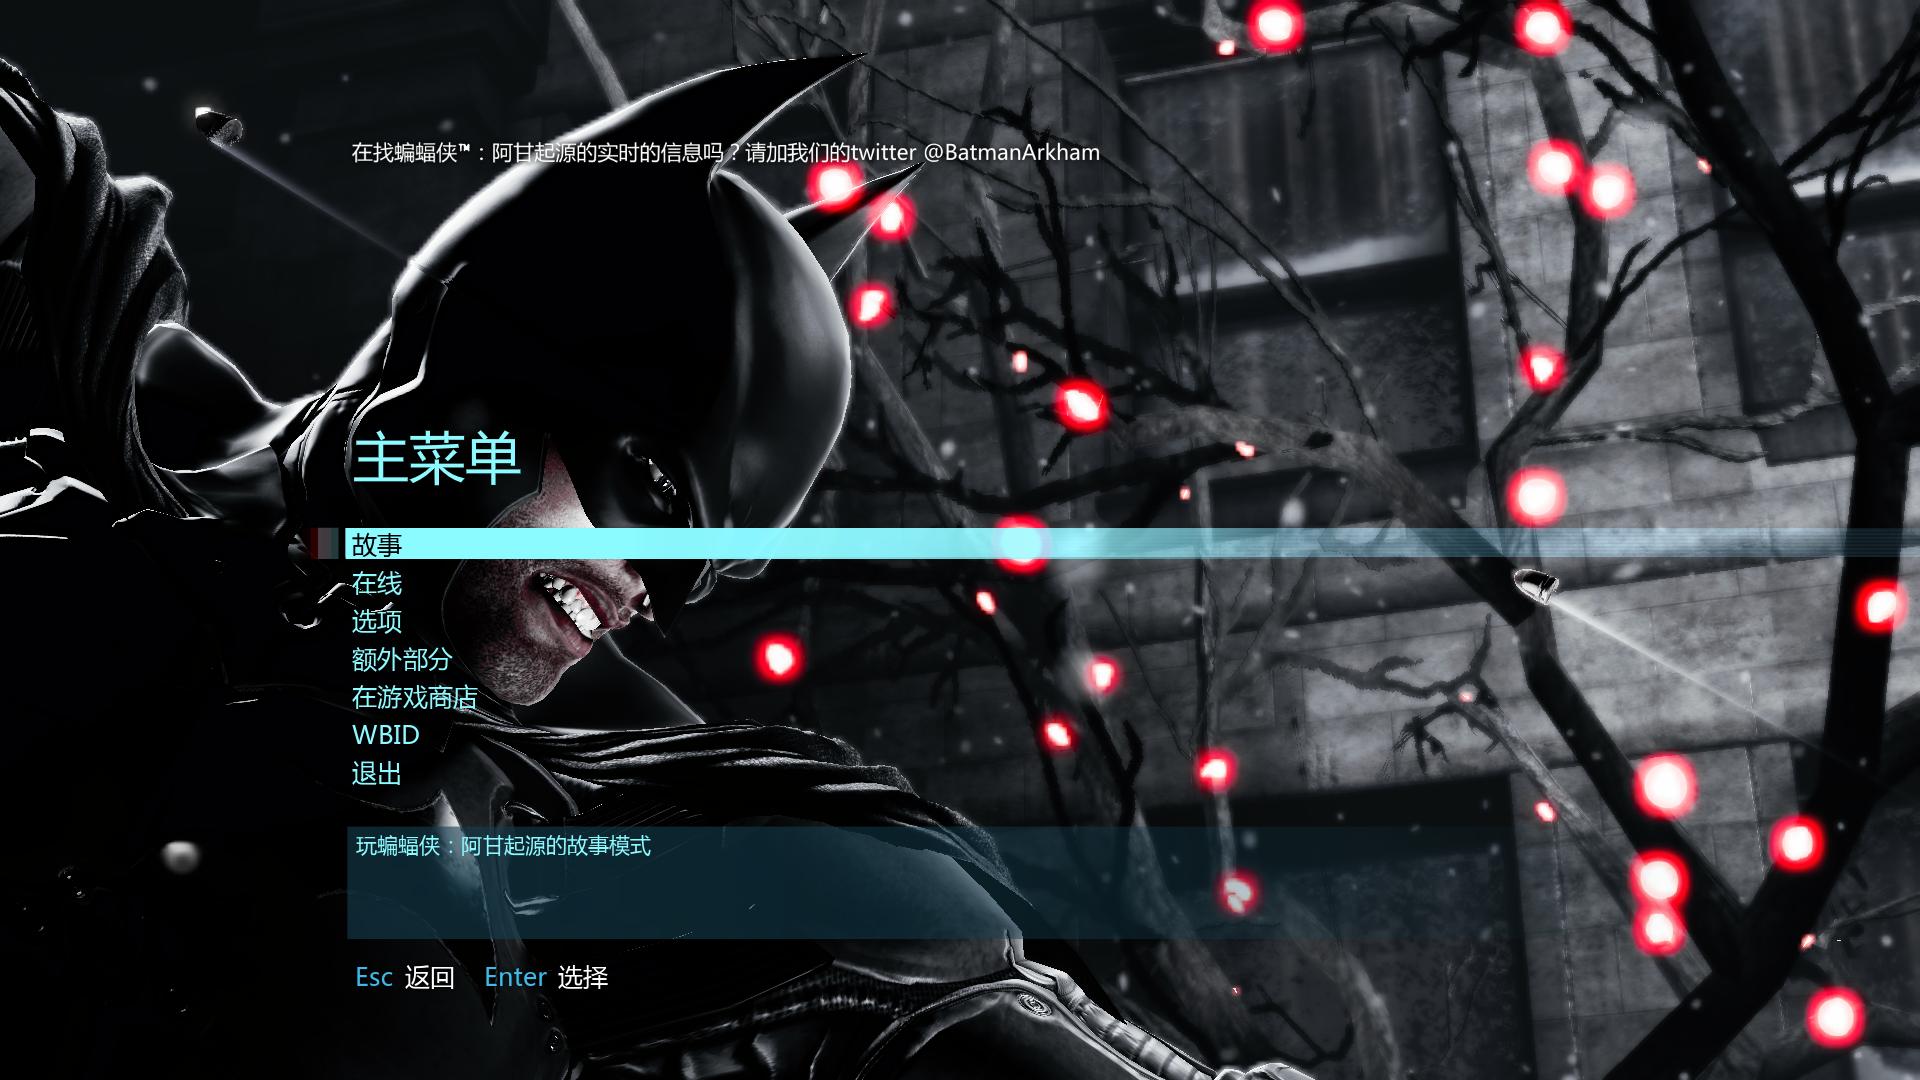 ԴBatman: Arkham Originsv1.0ʮ޸LinGon